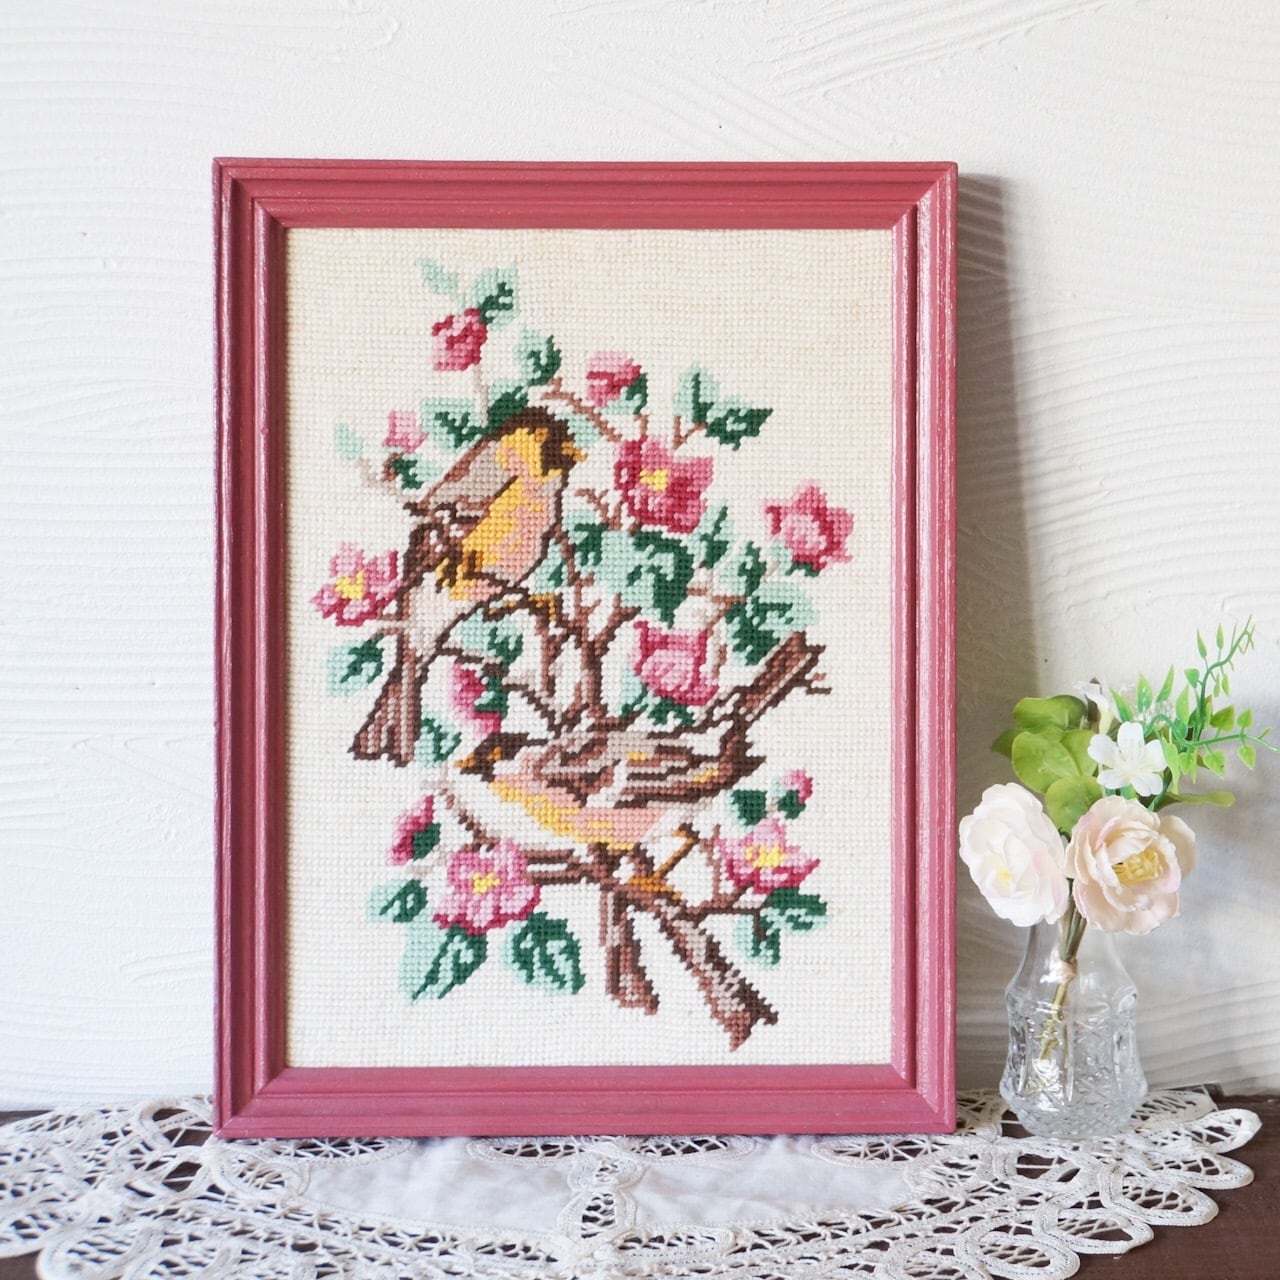 フランス 刺繍フレーム〈2羽の鳥と花〉 Anneli folkcraft